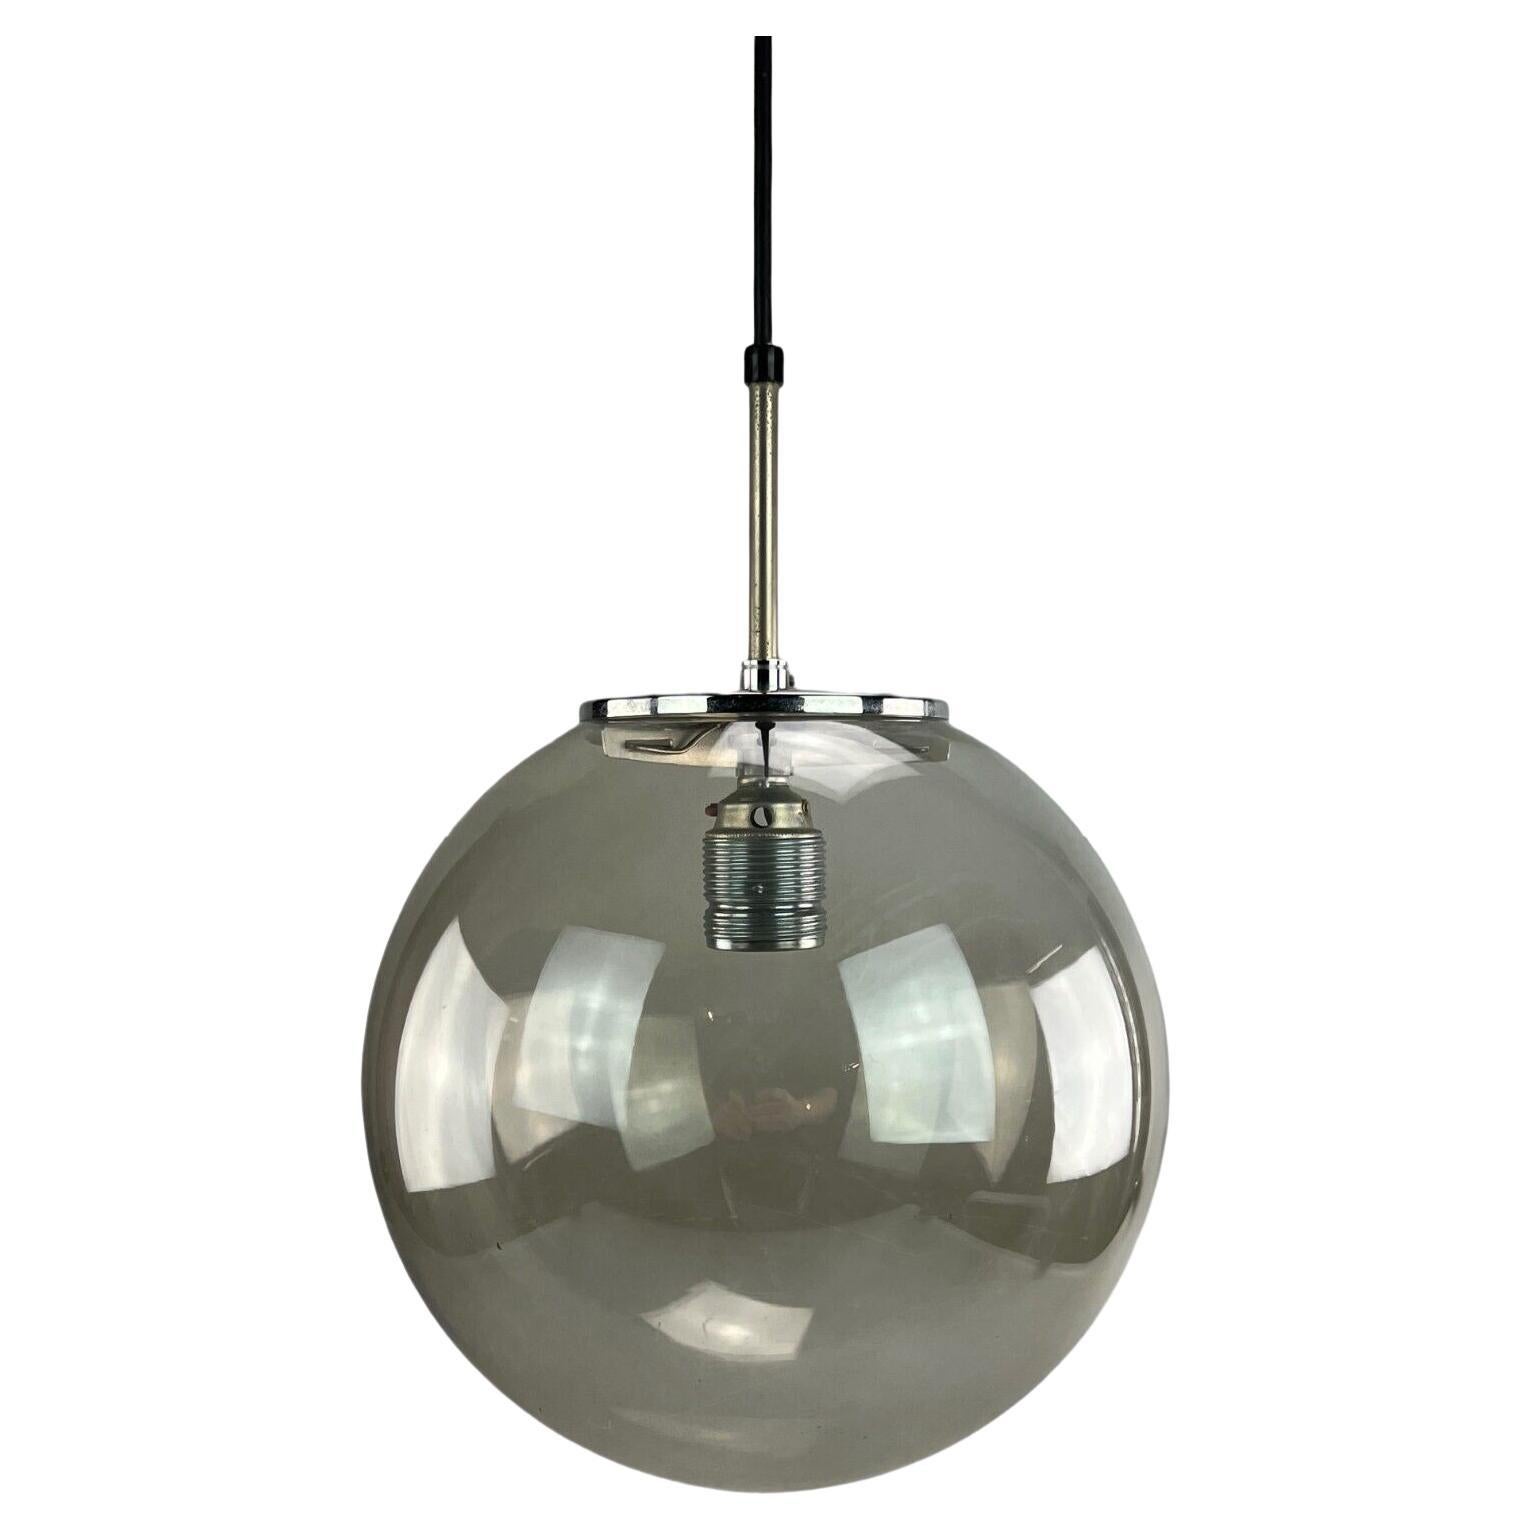 1960s-1970s Lamp Ceiling Lamp Limburg "Globe" Spherical Lamp Ball Lamp Design For Sale